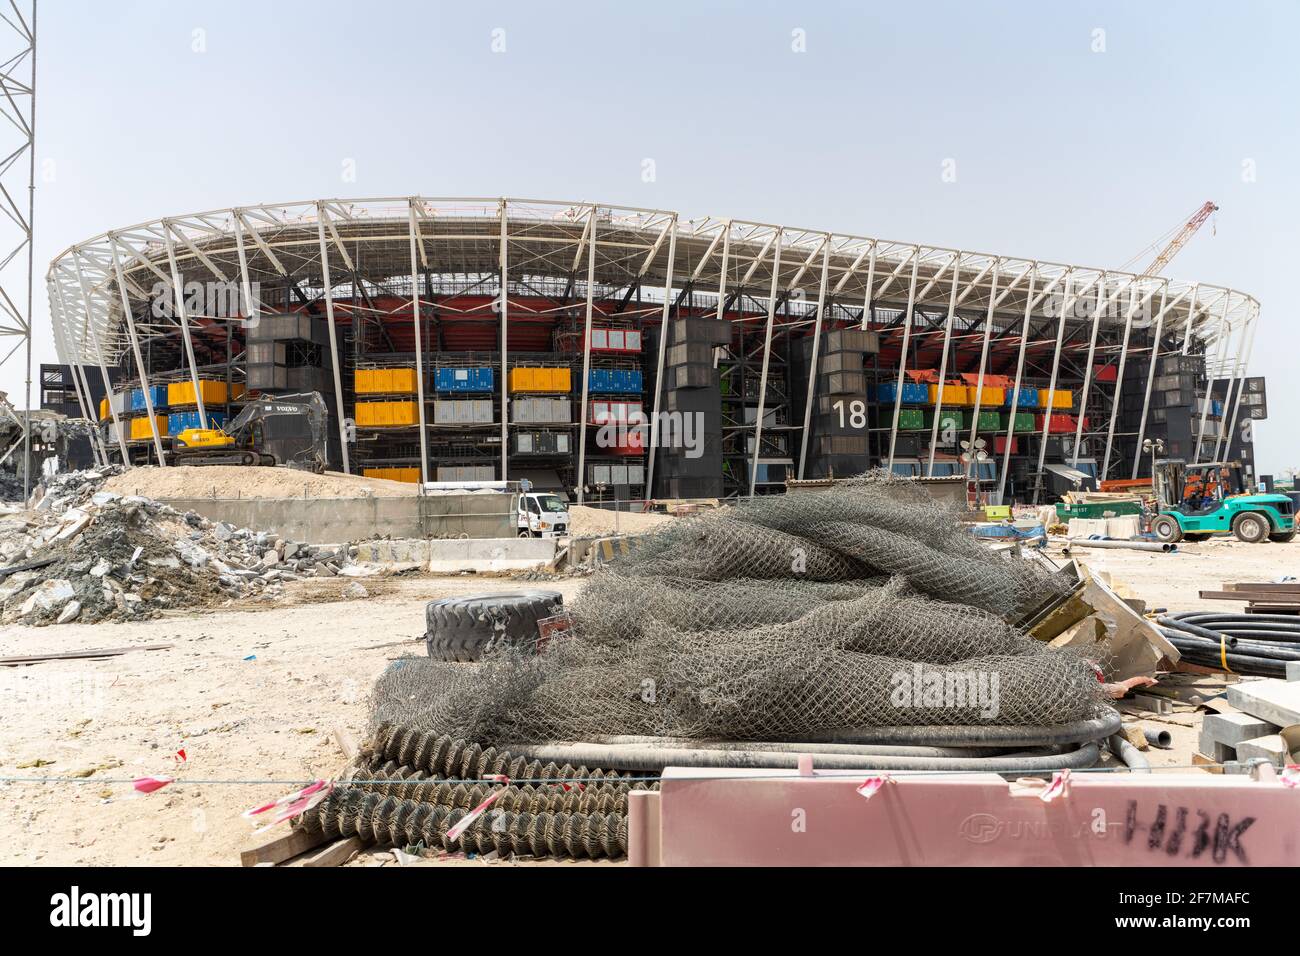 Coppa del mondo FIFA 2022, Qatar - lo stadio Ras Abu Aboud è stato costruito utilizzando contenitori di spedizione, sedili rimovibili e altri "blocchi da costruzione" modulari. Lo stadio sarà completamente smantellato e riproposto dopo la Coppa del mondo FIFA Qatar 2022. Le sue parti saranno utilizzate in altri progetti sportivi o non, stabilendo un nuovo standard di sostenibilità e introducendo nuove idee audaci nella pianificazione dei tornei. Foto Stock